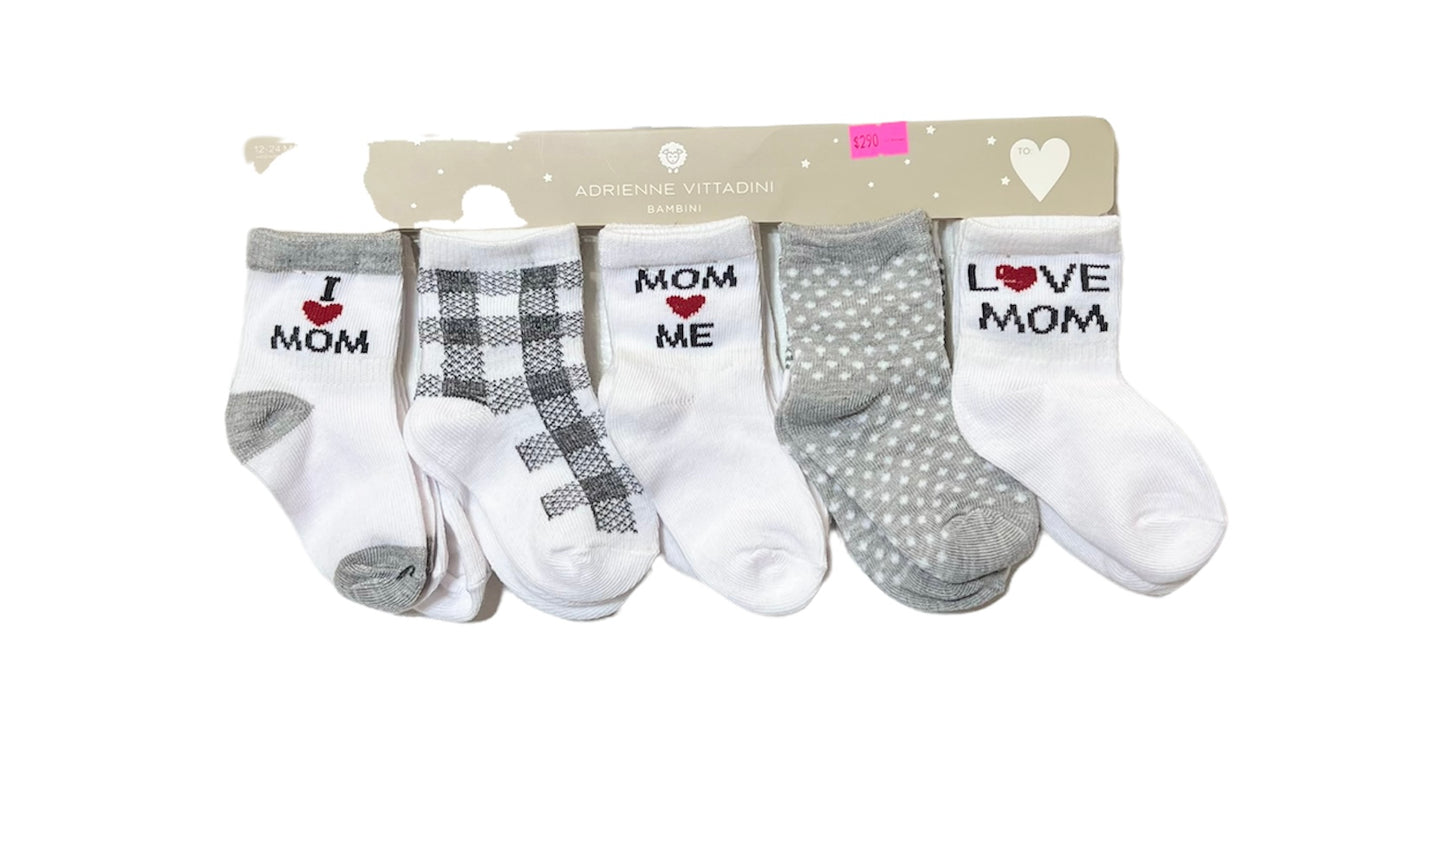 10 pares de calcetas i love mom